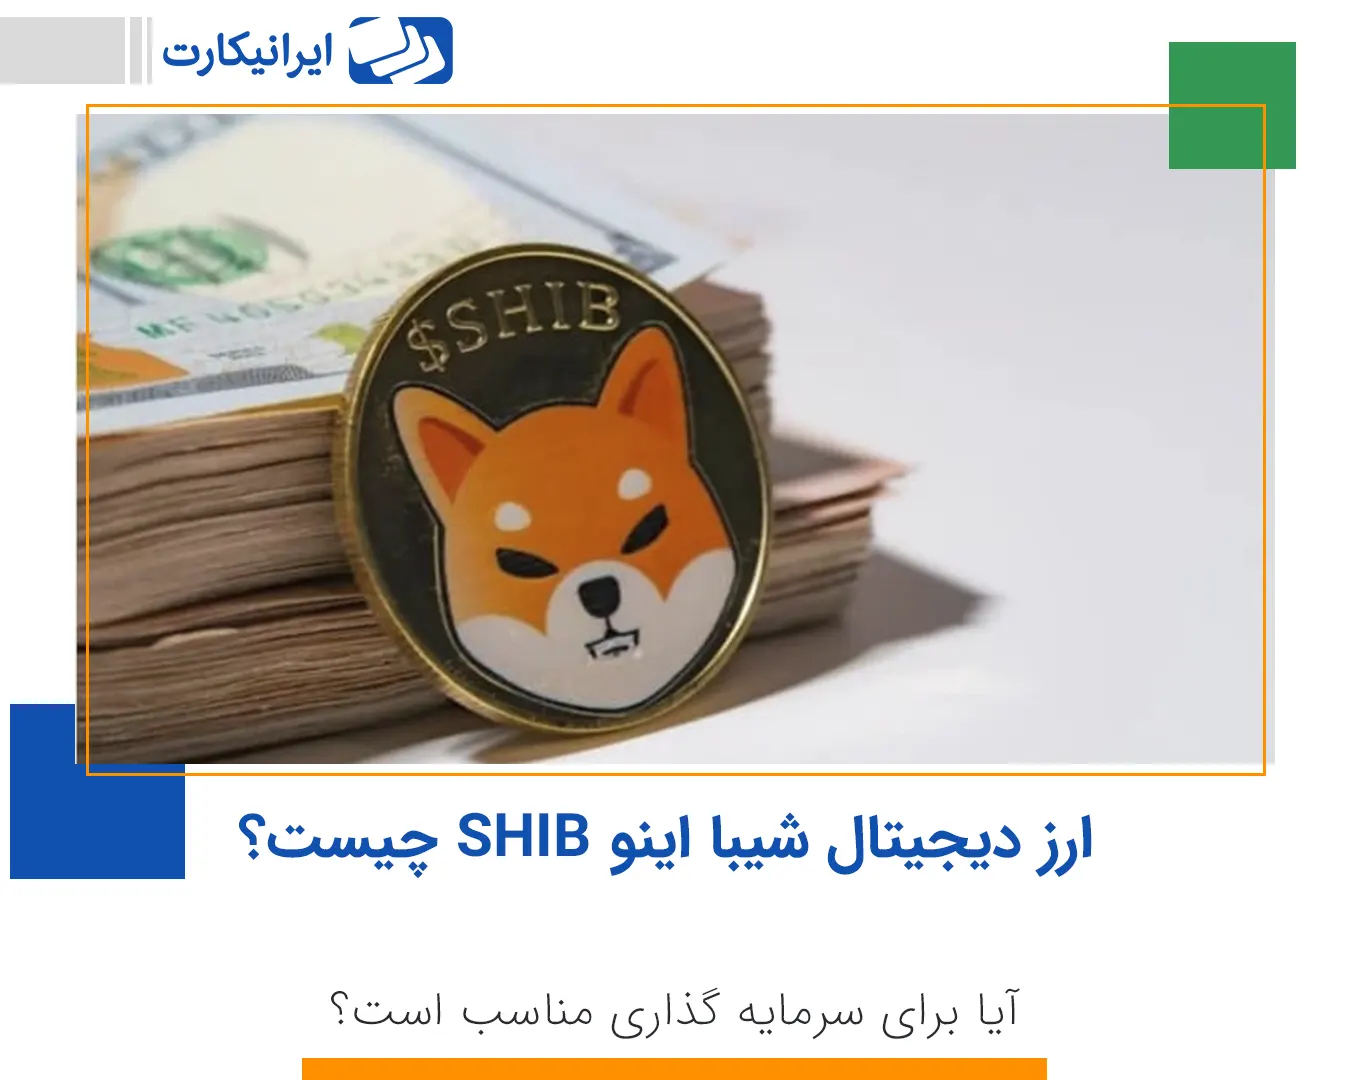 ارز دیجیتال شیبا اینو SHIB چیست و آیا برای سرمایه گذاری مناسب است؟